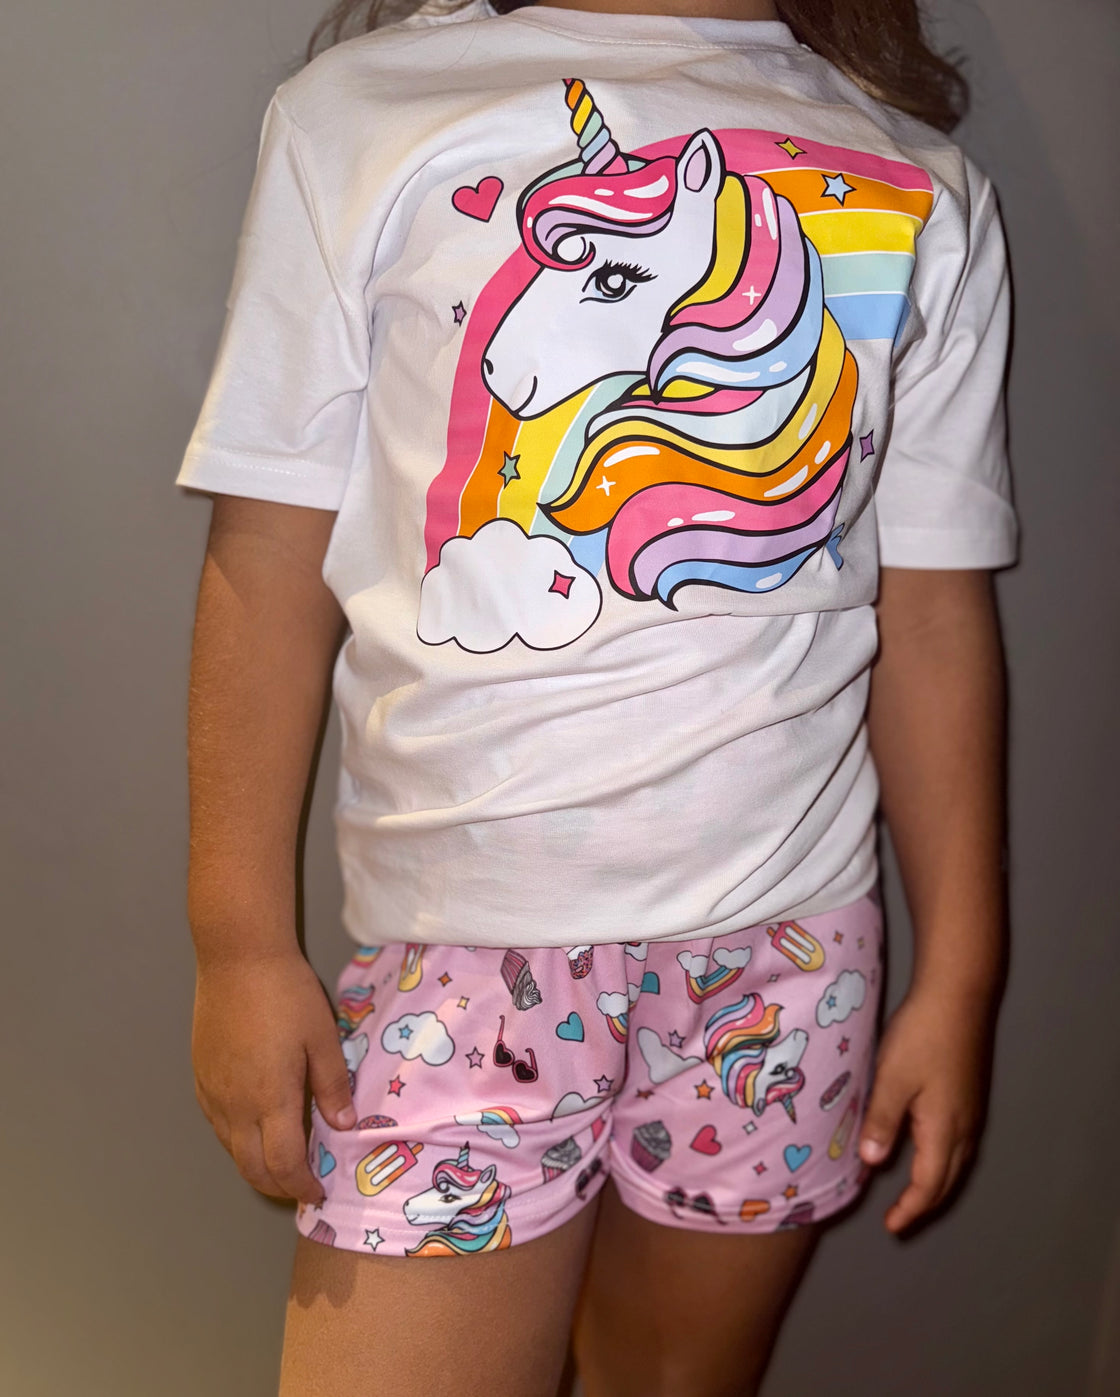 Unicorn pajamas